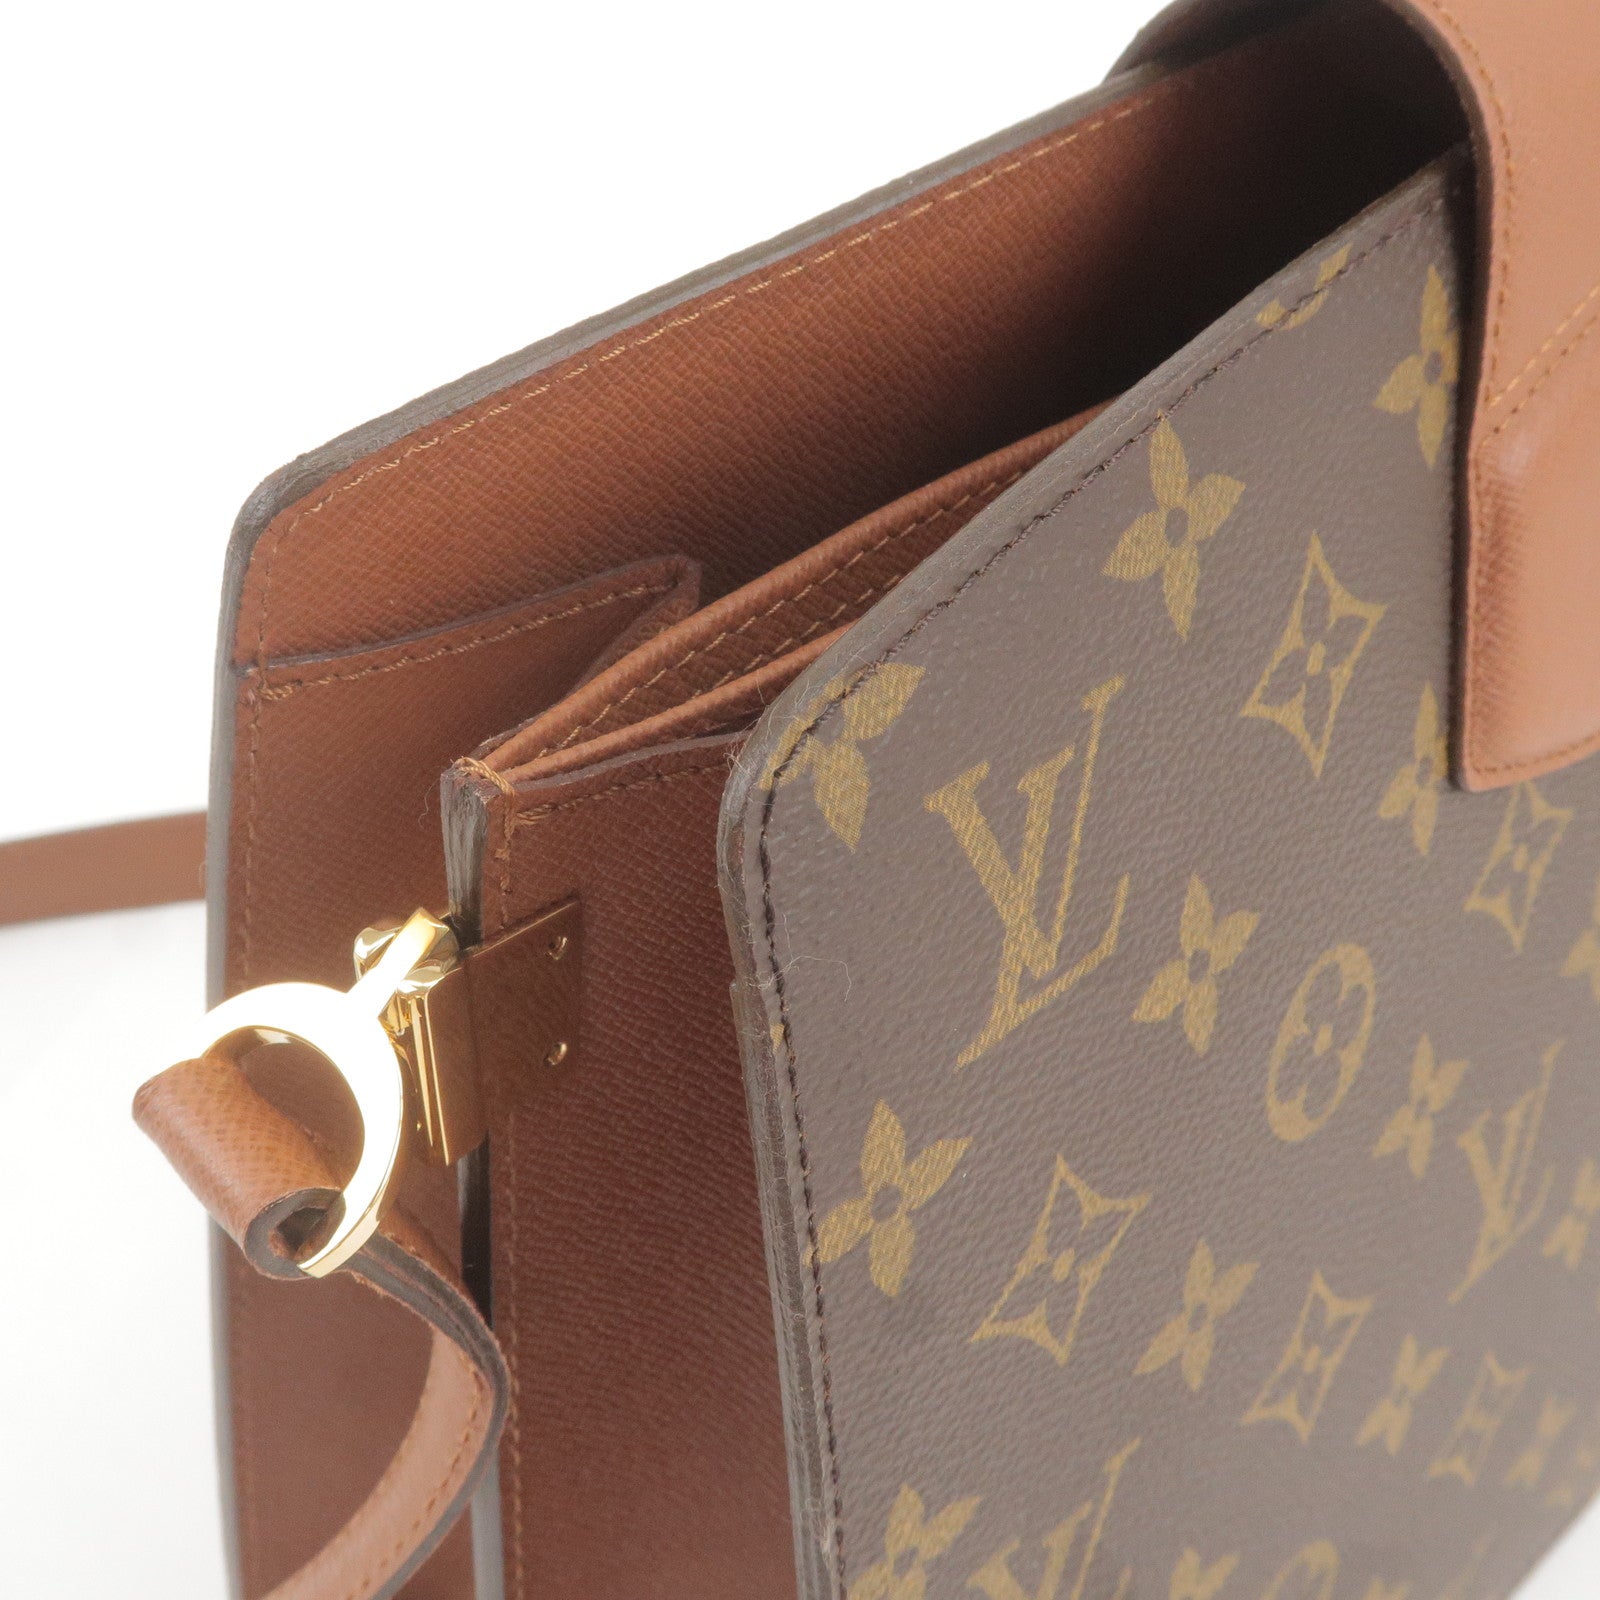 Louis Vuitton Monogram Courcelles Bag